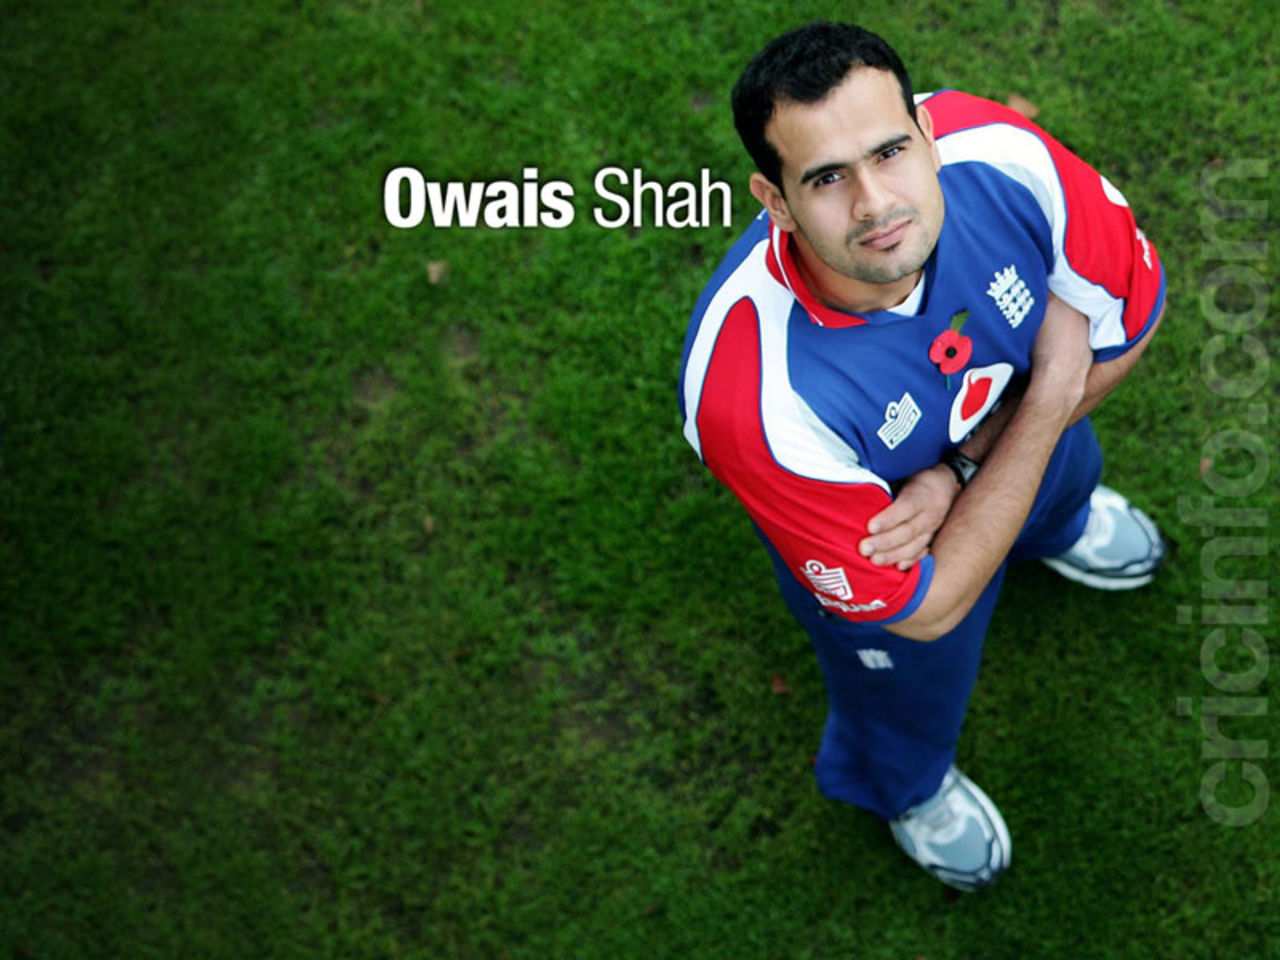 Owais Shah